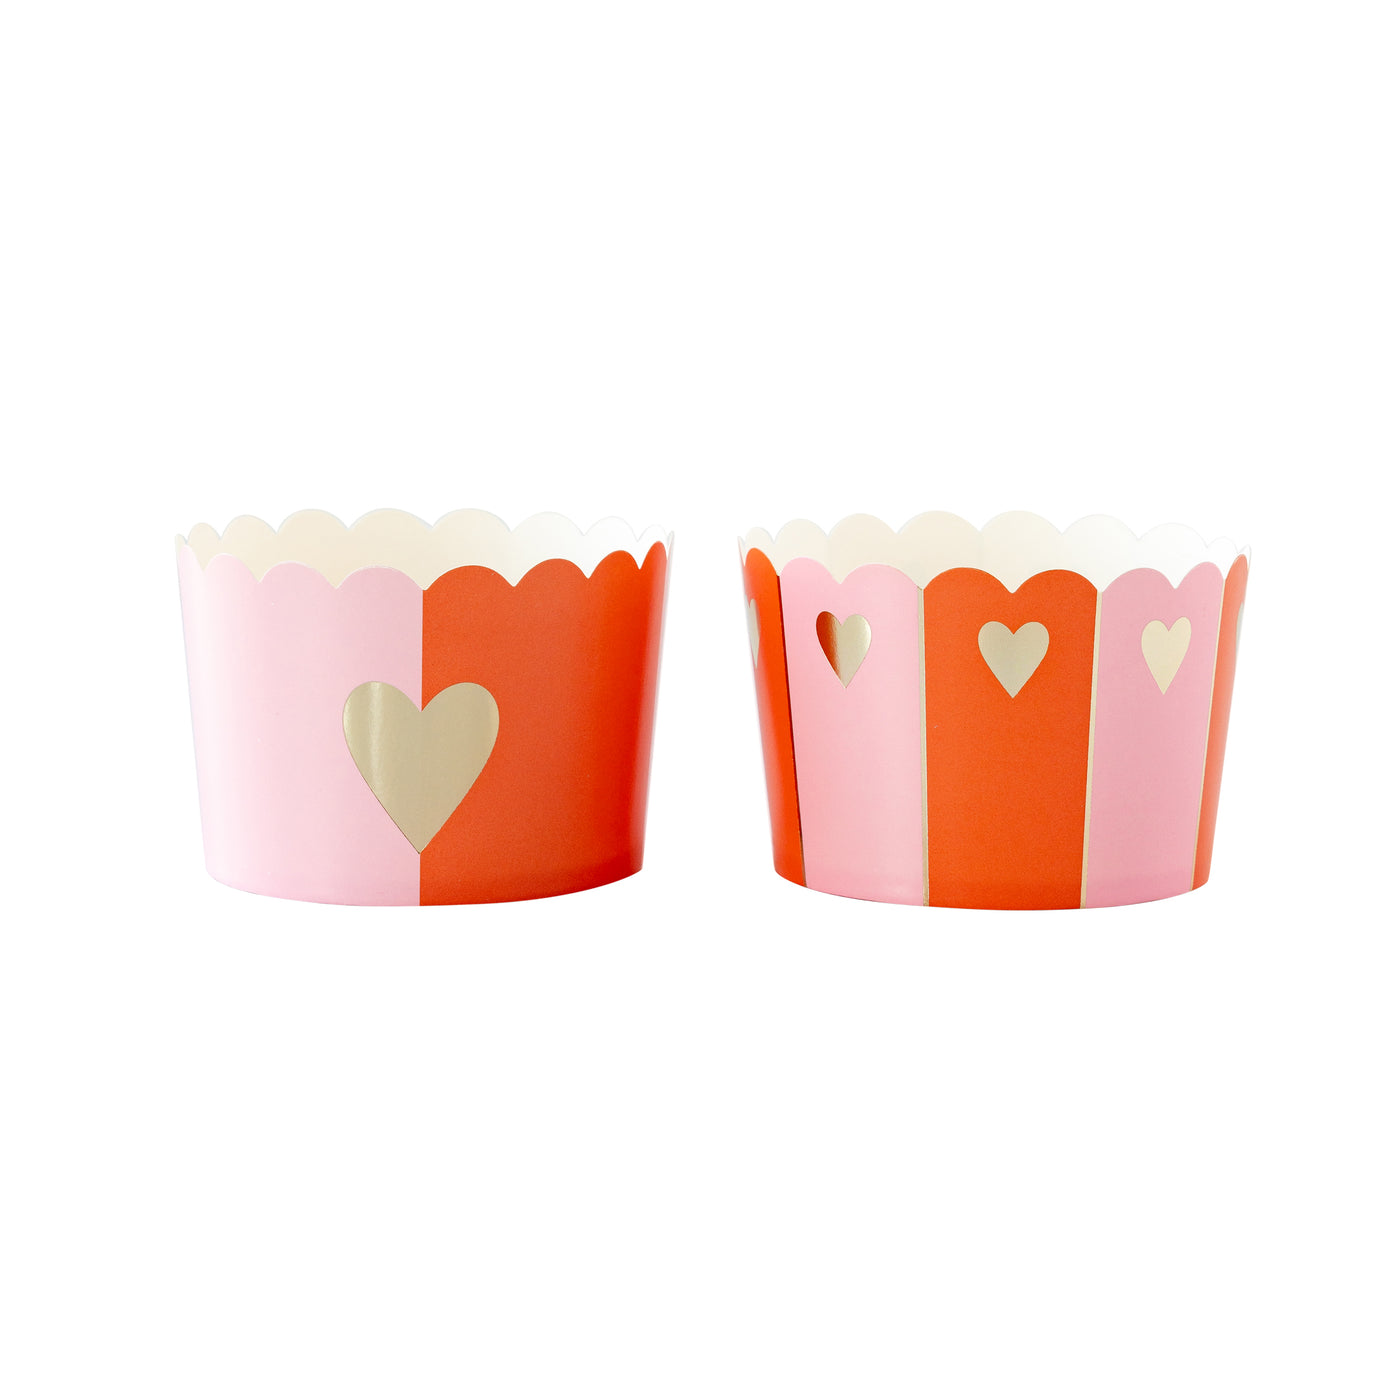 PLJC1518 - JUMBO Gold Half Heart Baking/Food Cups